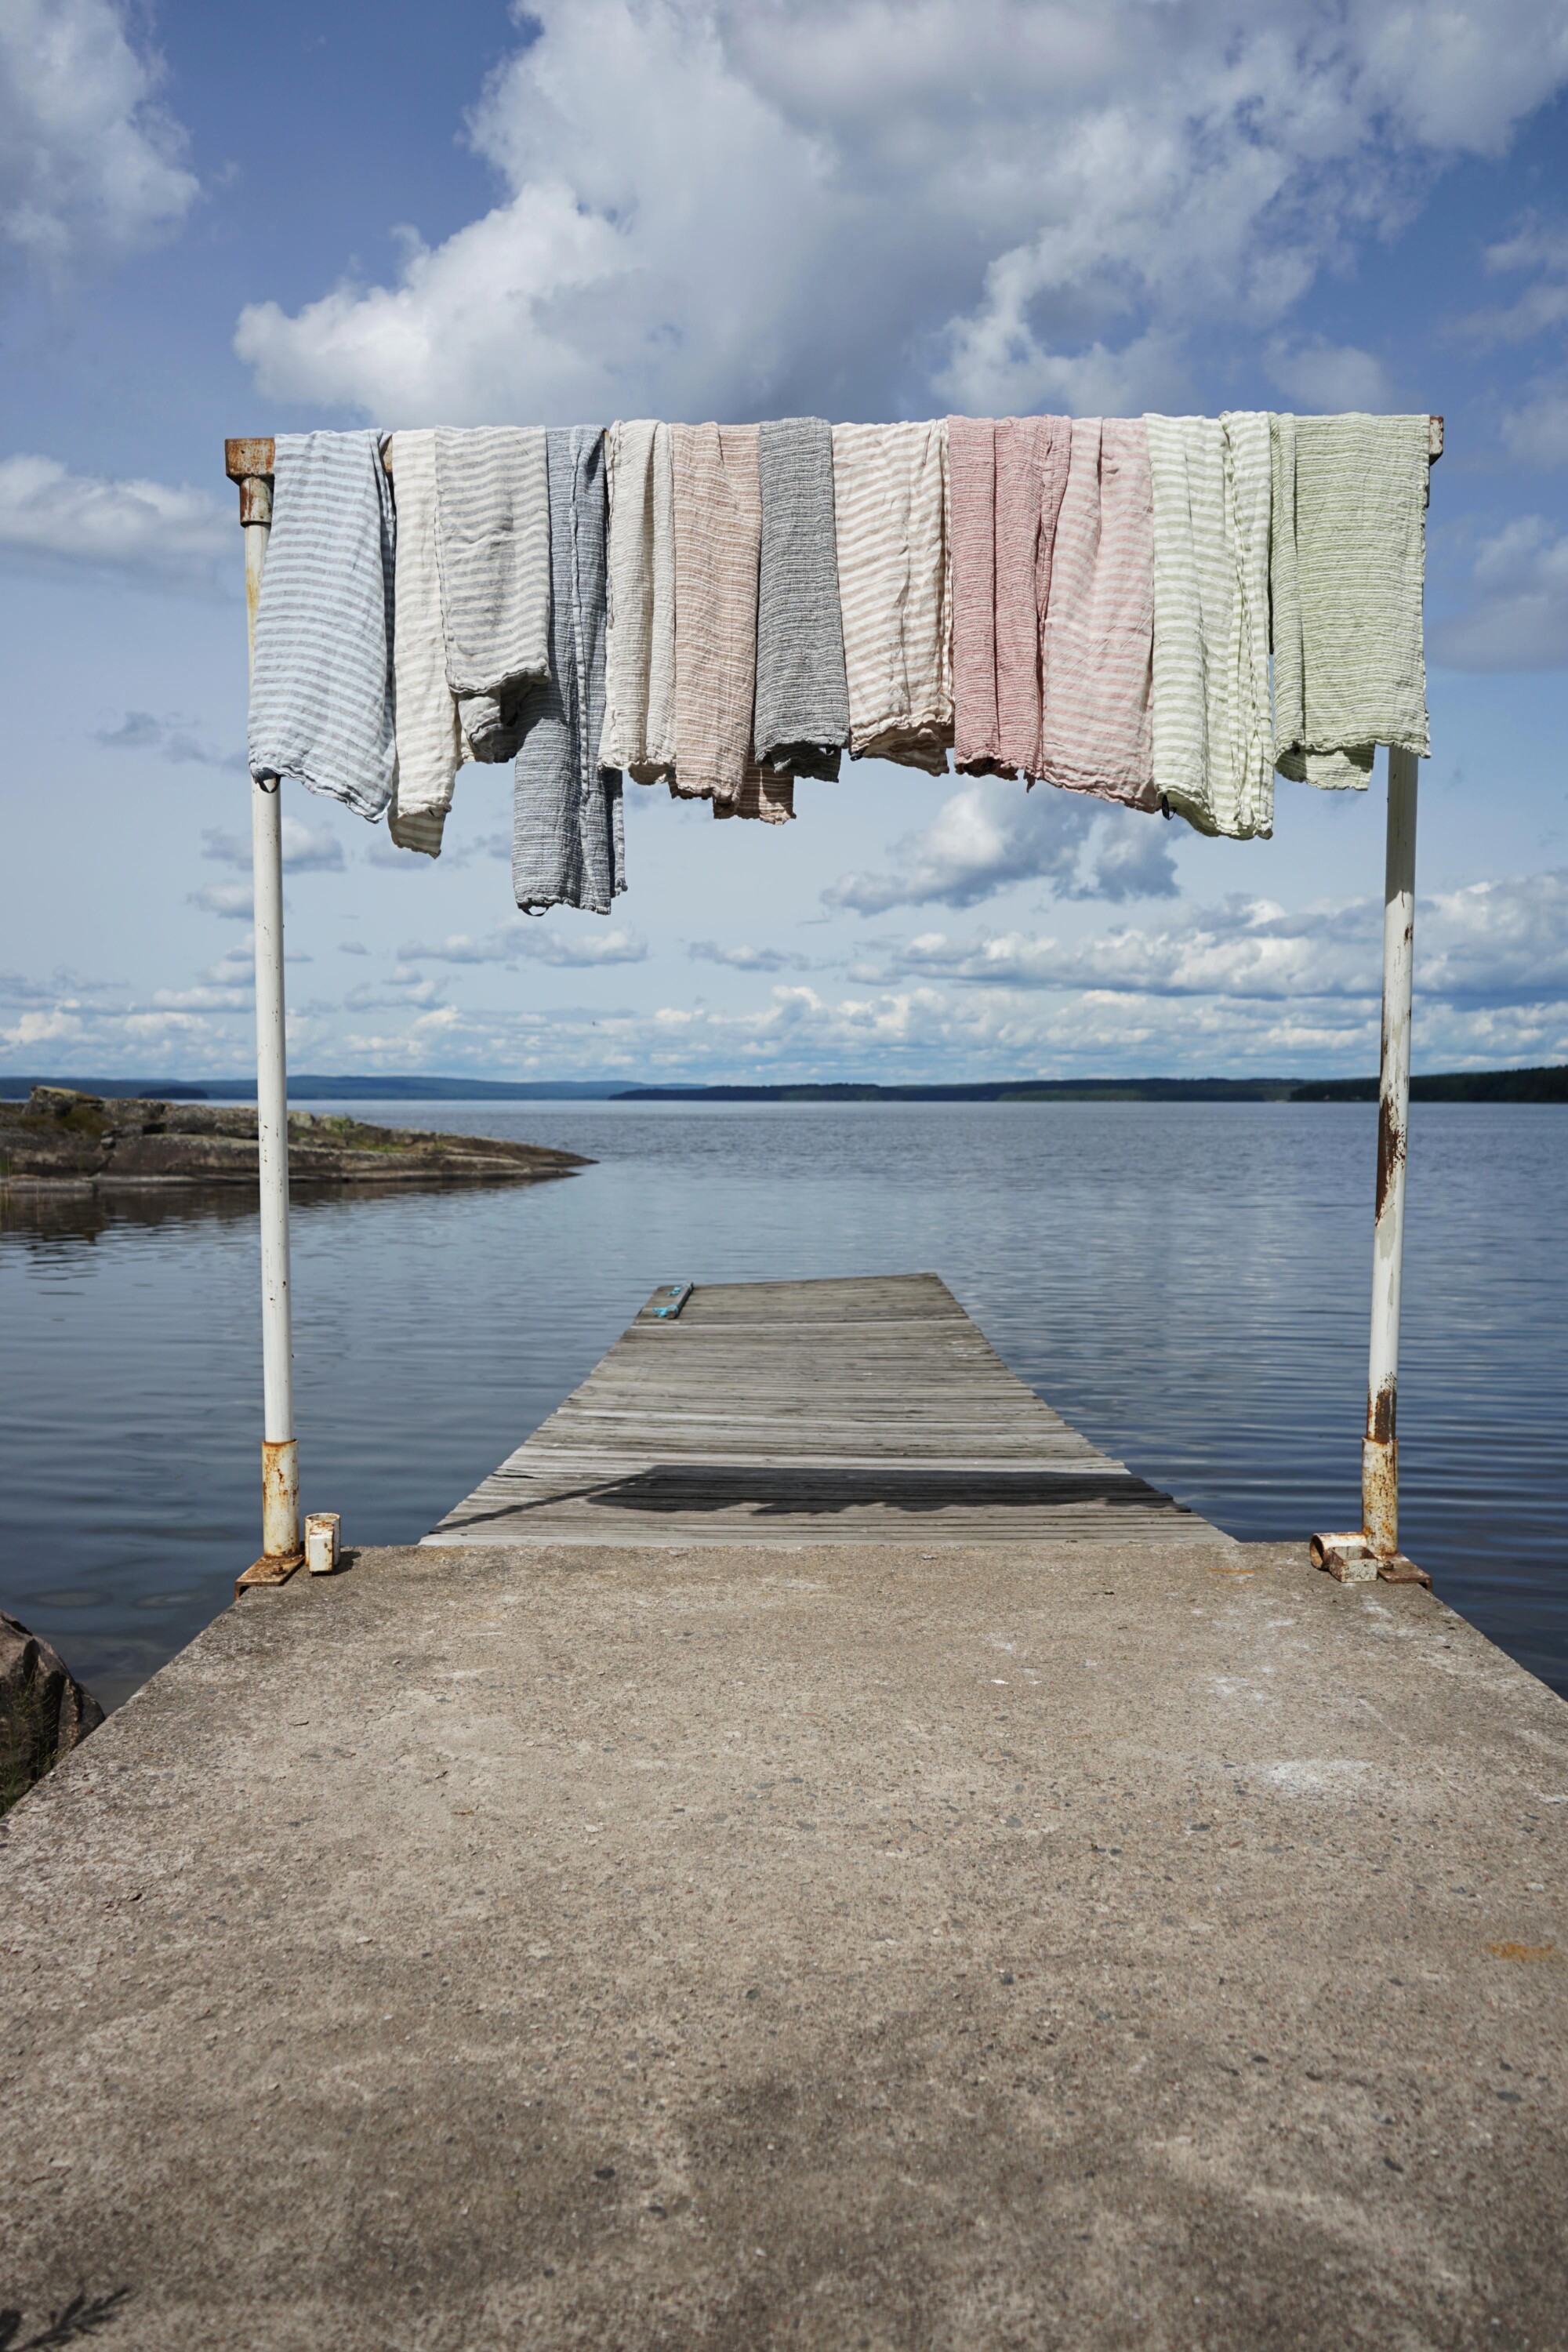 badhanddukar hänger i en ställning på en brygga